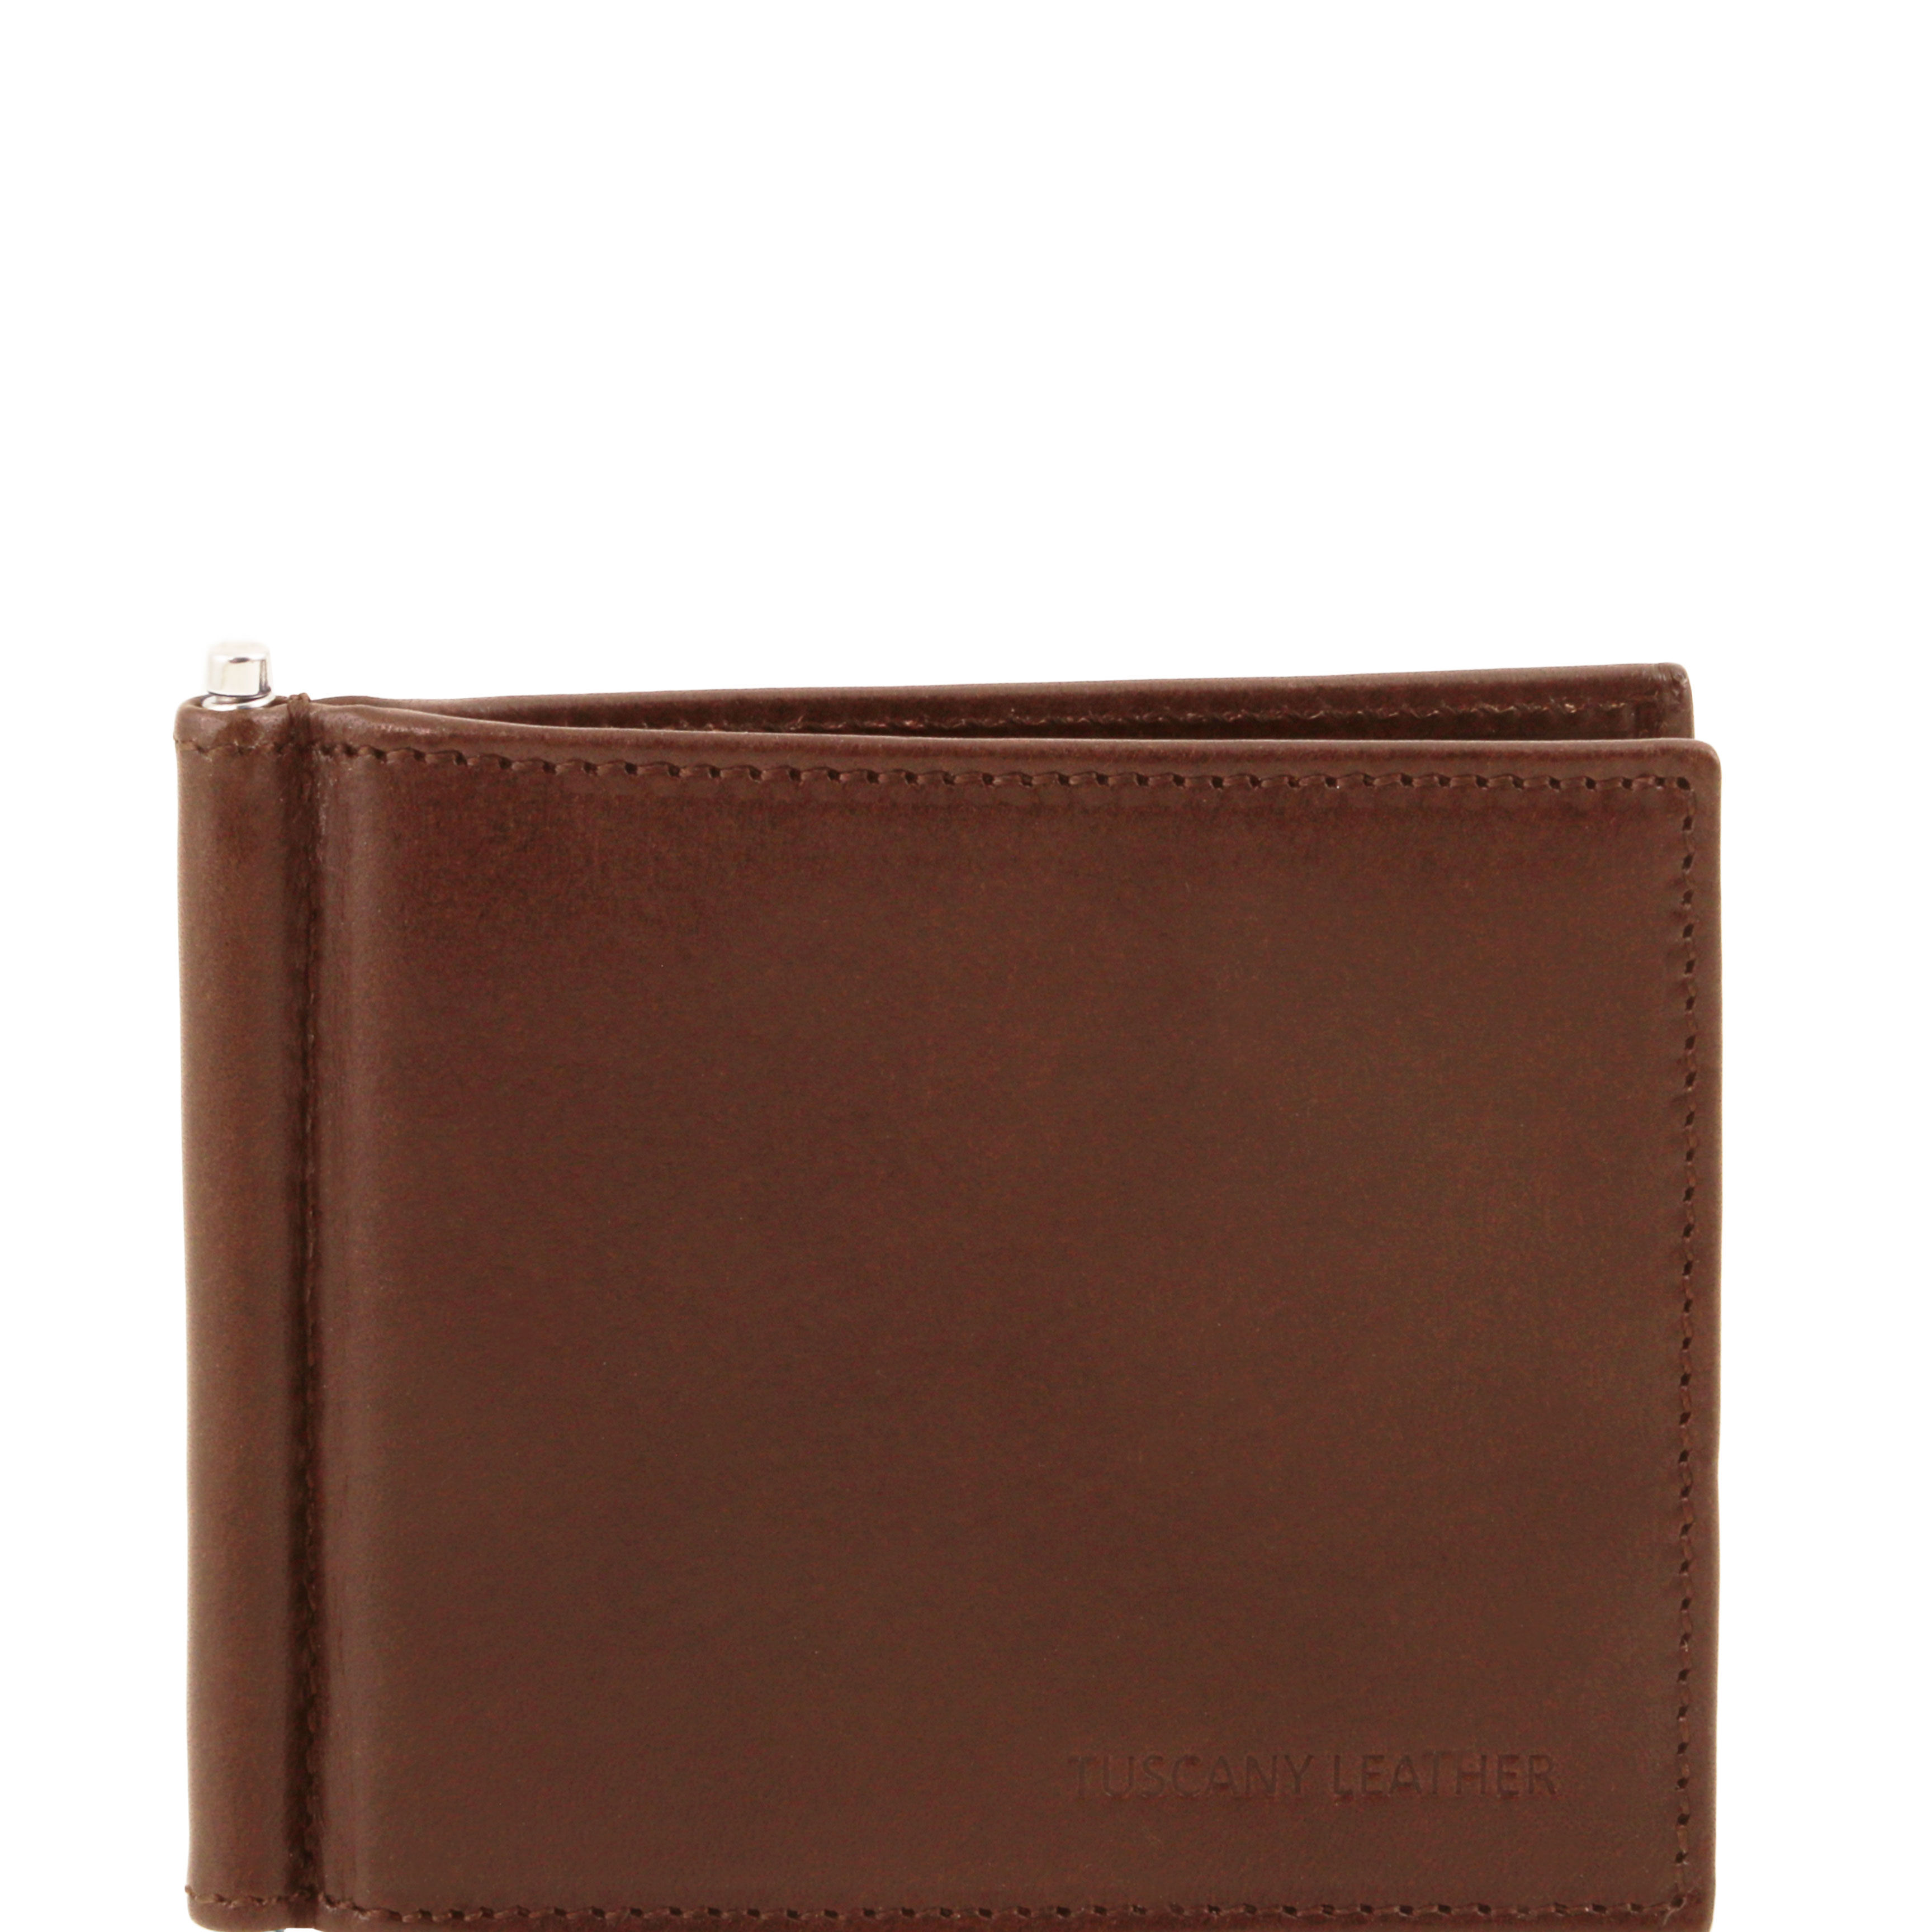 Portofel Tuscany Leather din piele maro credit/business cu cleste pentru bancnote